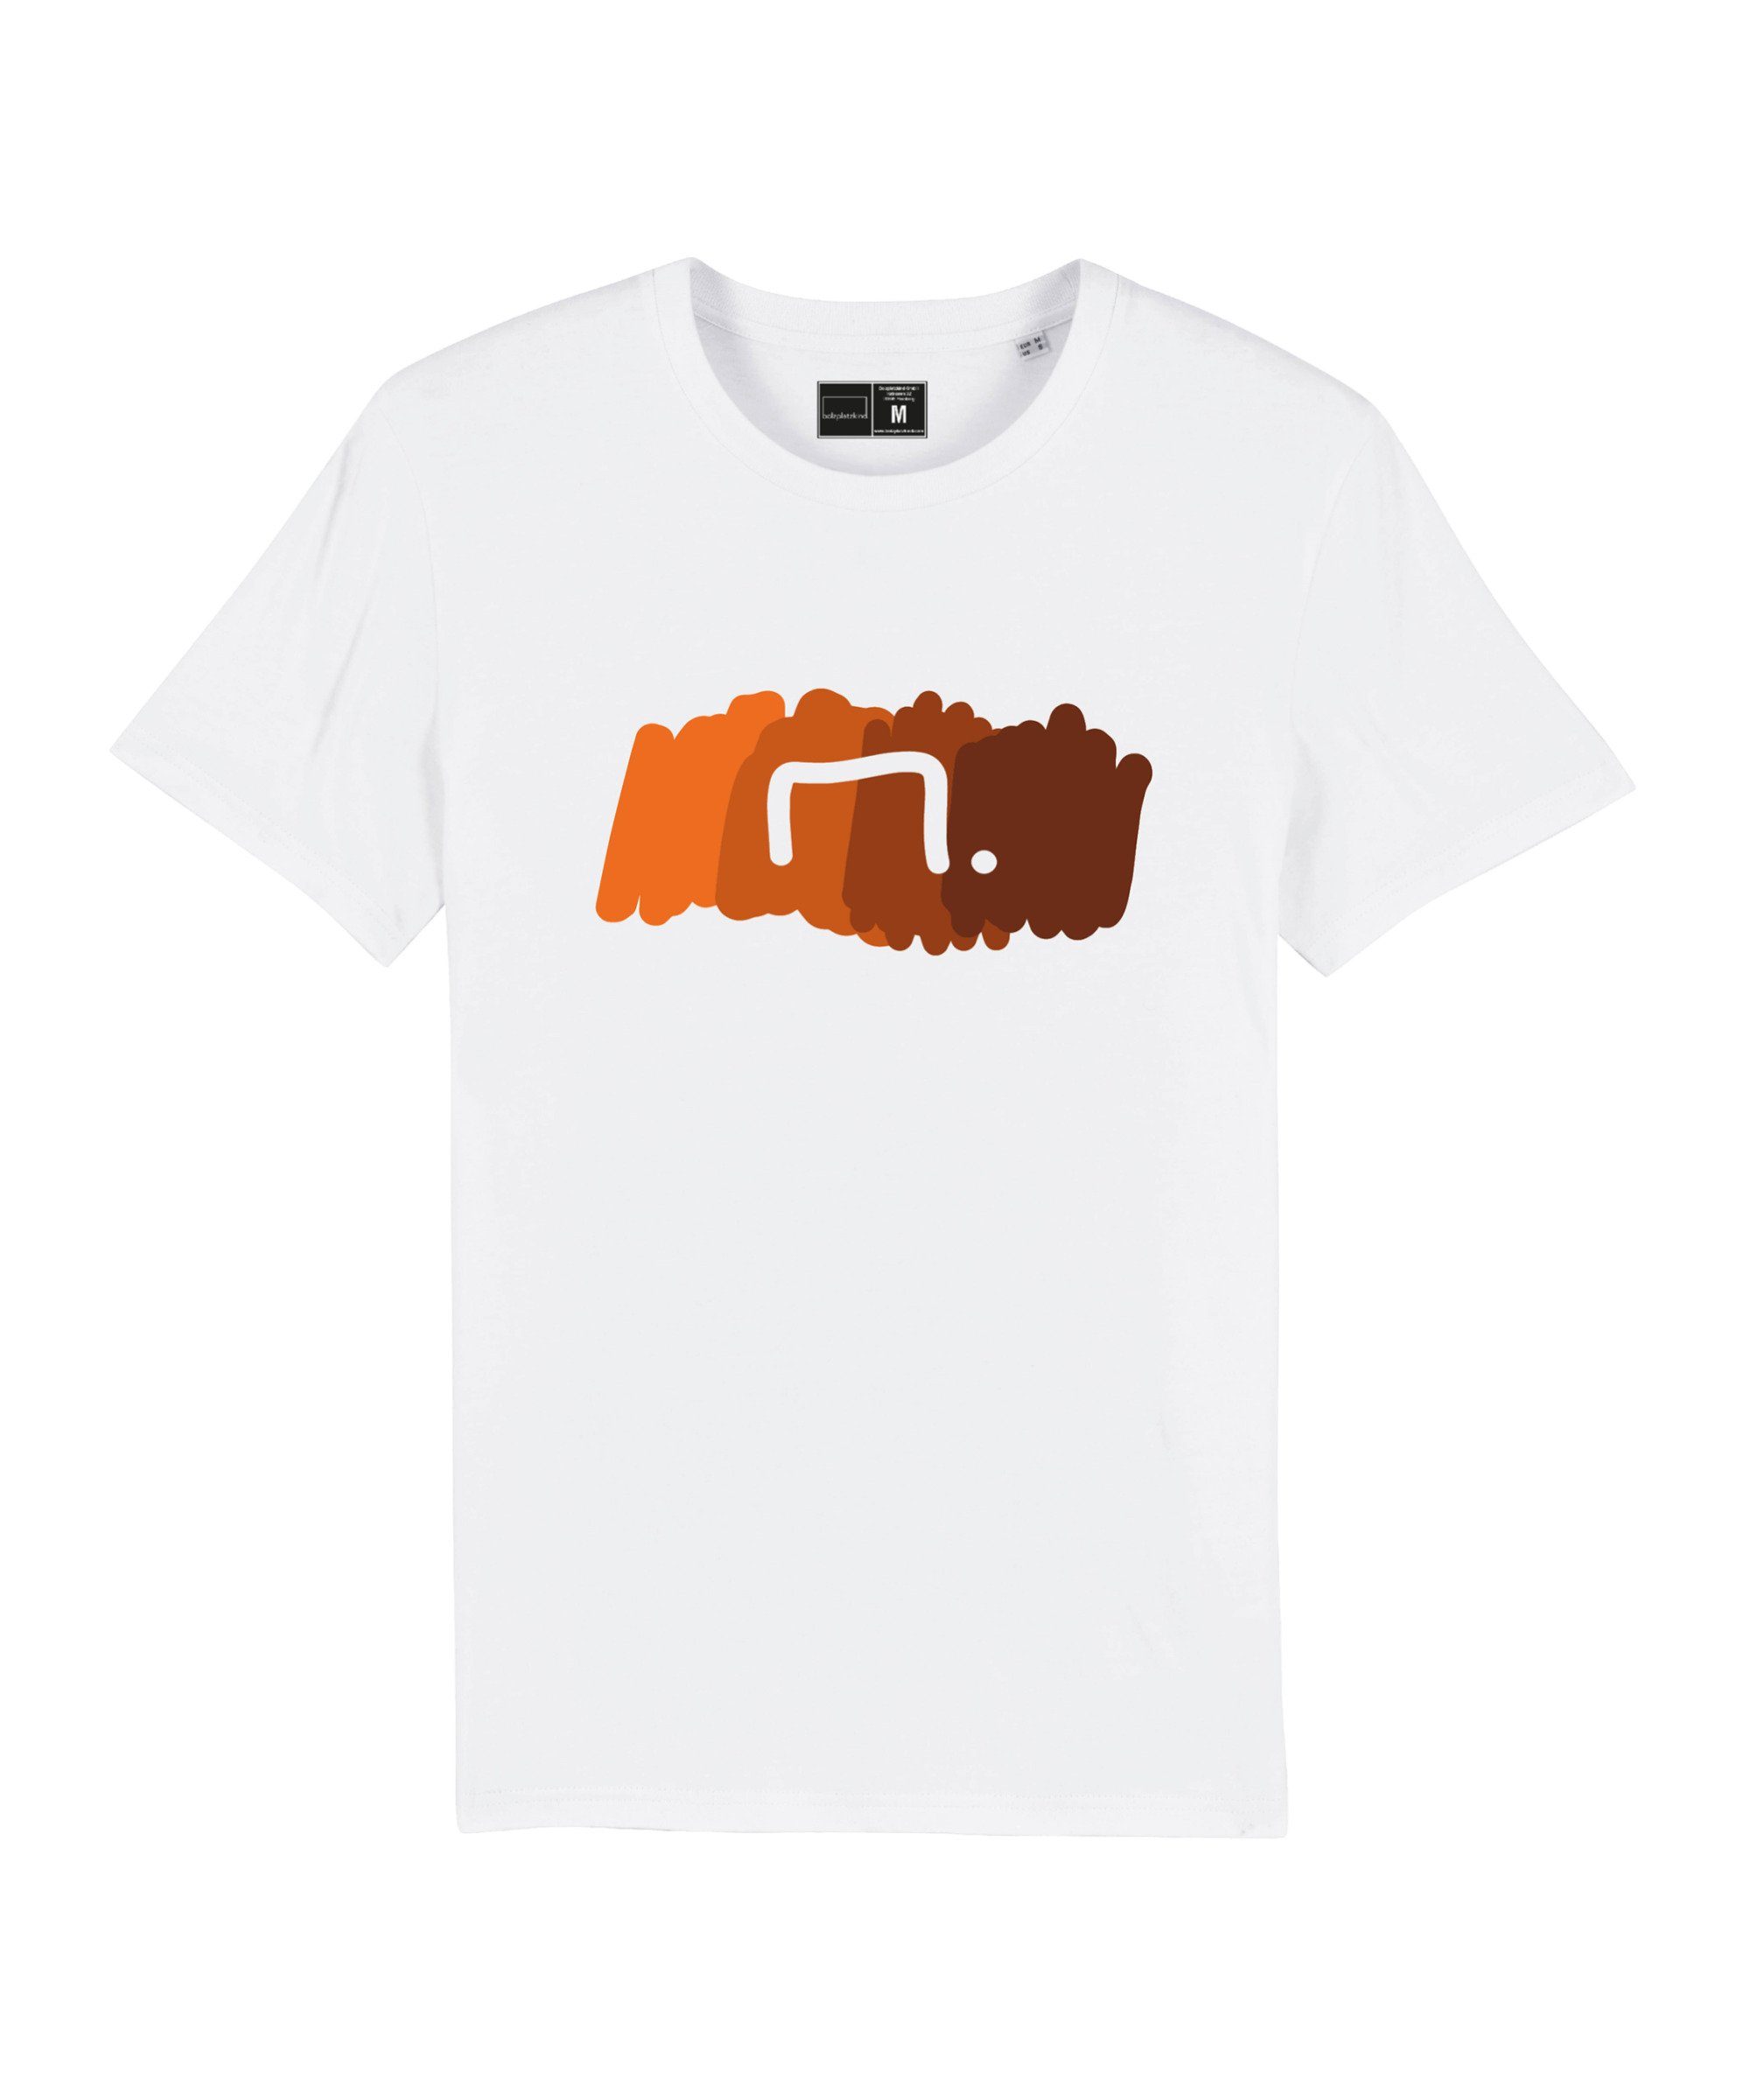 Bolzplatzkind T-Shirt "Free" T-Shirt Produkt Nachhaltiges weissorange